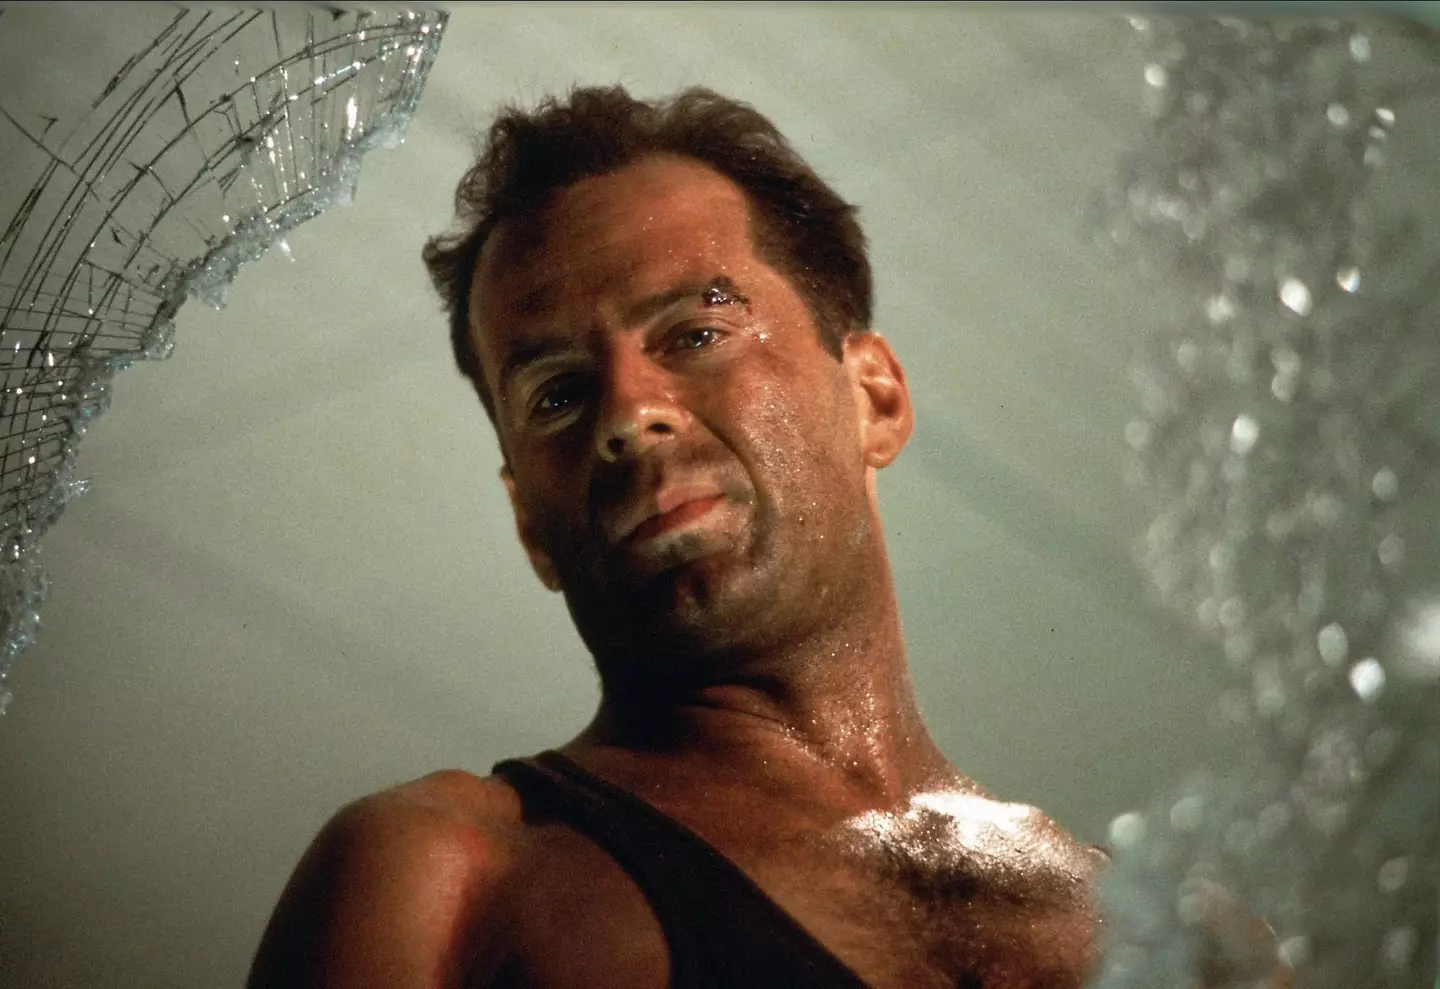 Willis as John McClane in Die Hard.